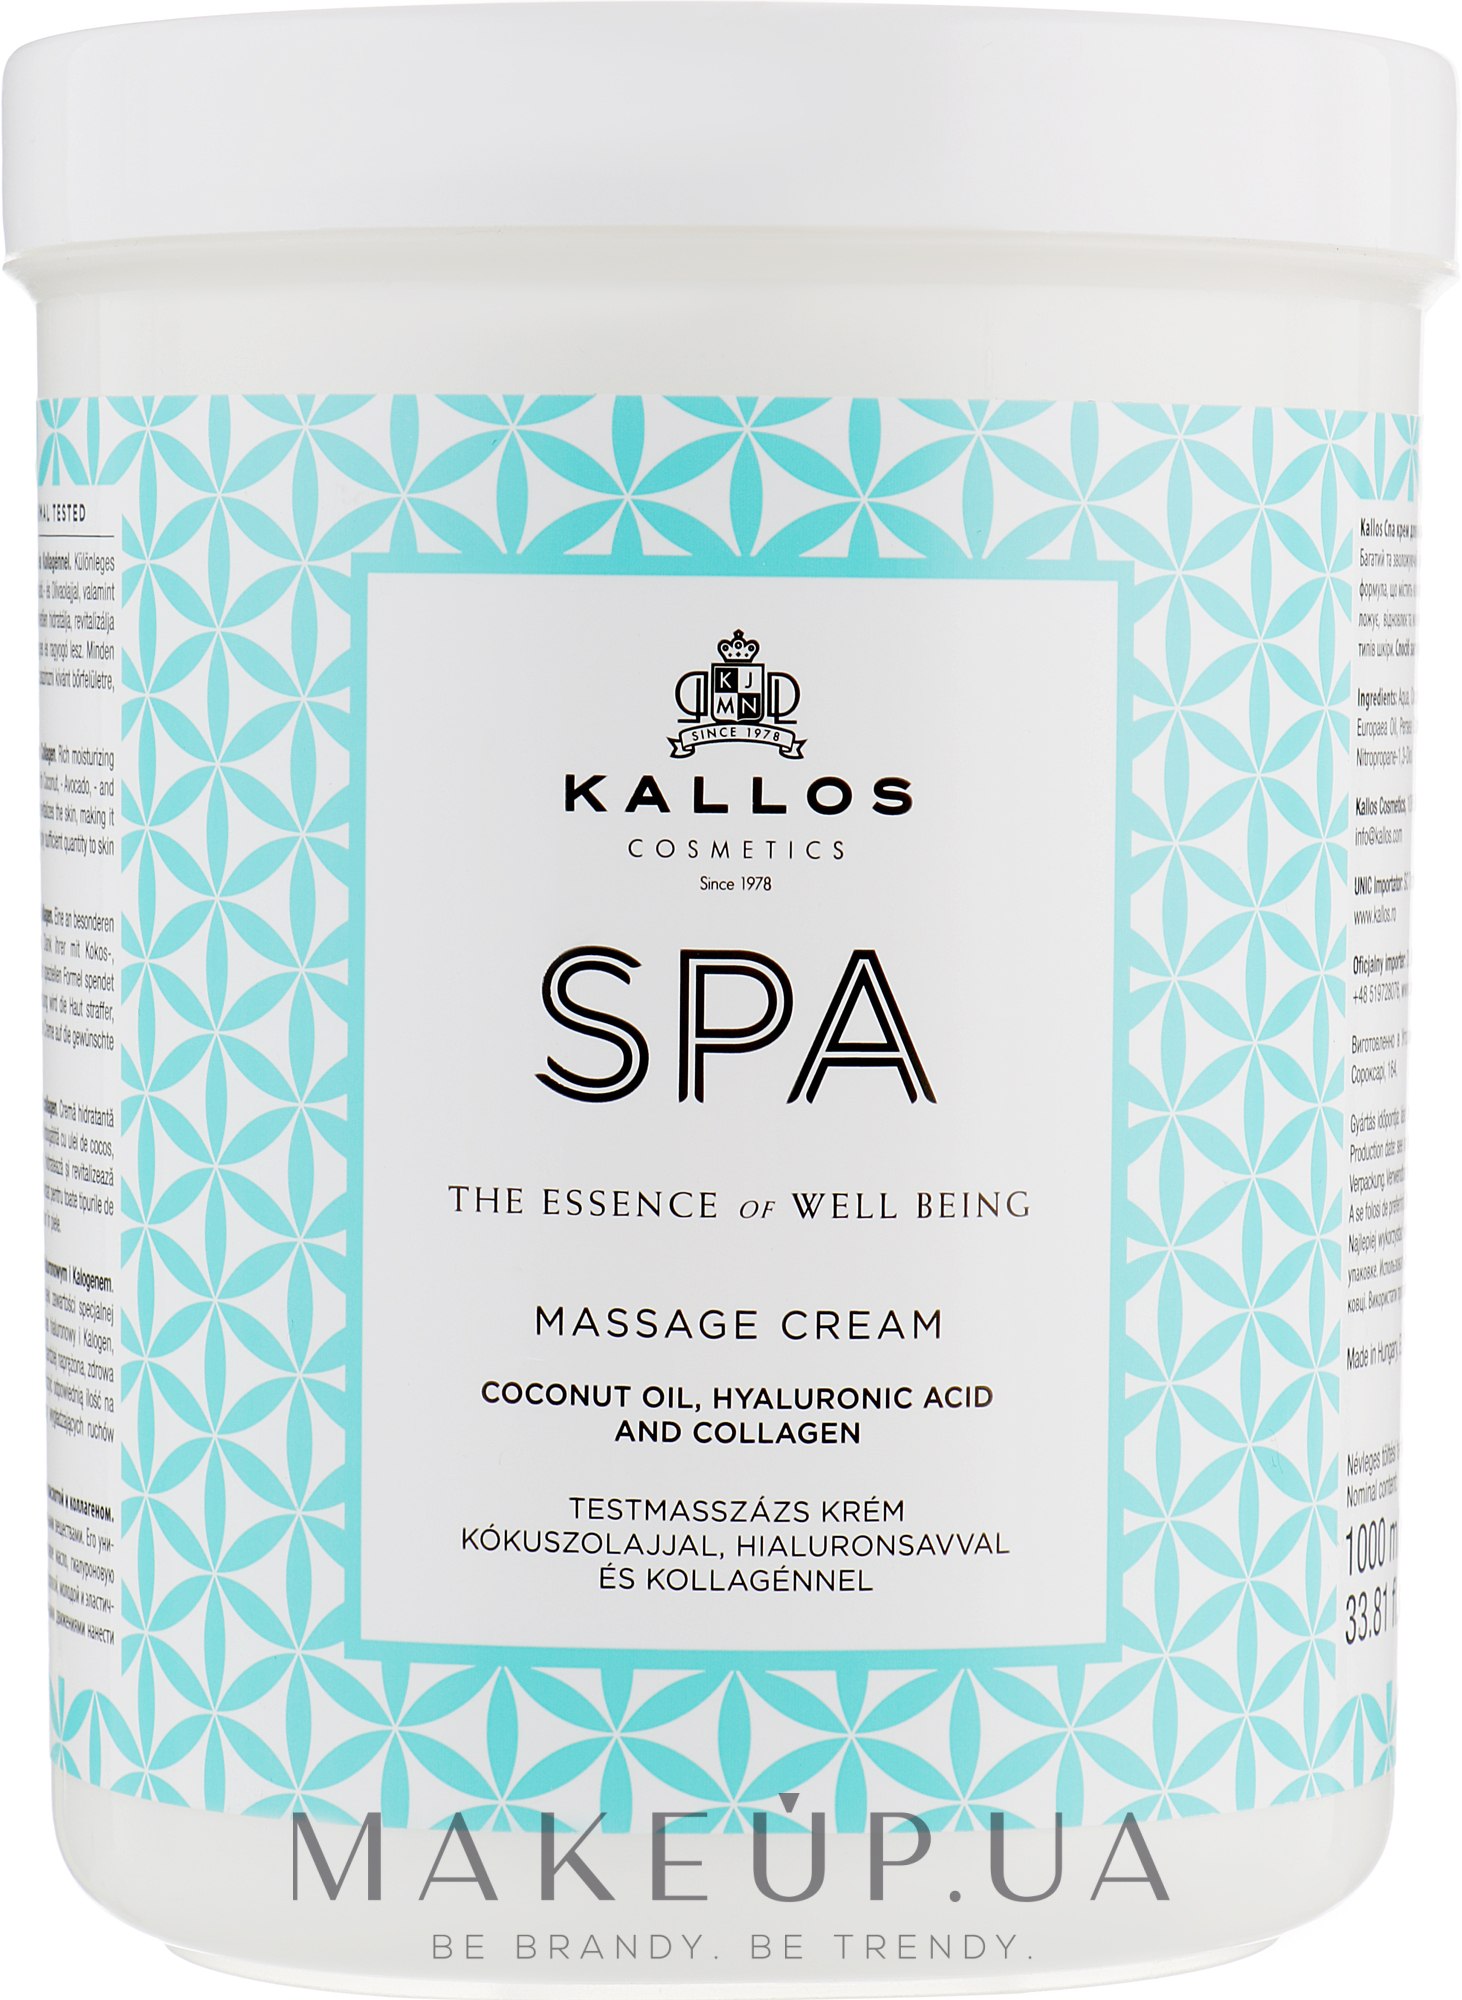 Крем для массажа с кокосовым маслом, гиалуроновой кислотой и коллагеном - Kallos Cosmetics SPA Massage Cream — фото 1000ml